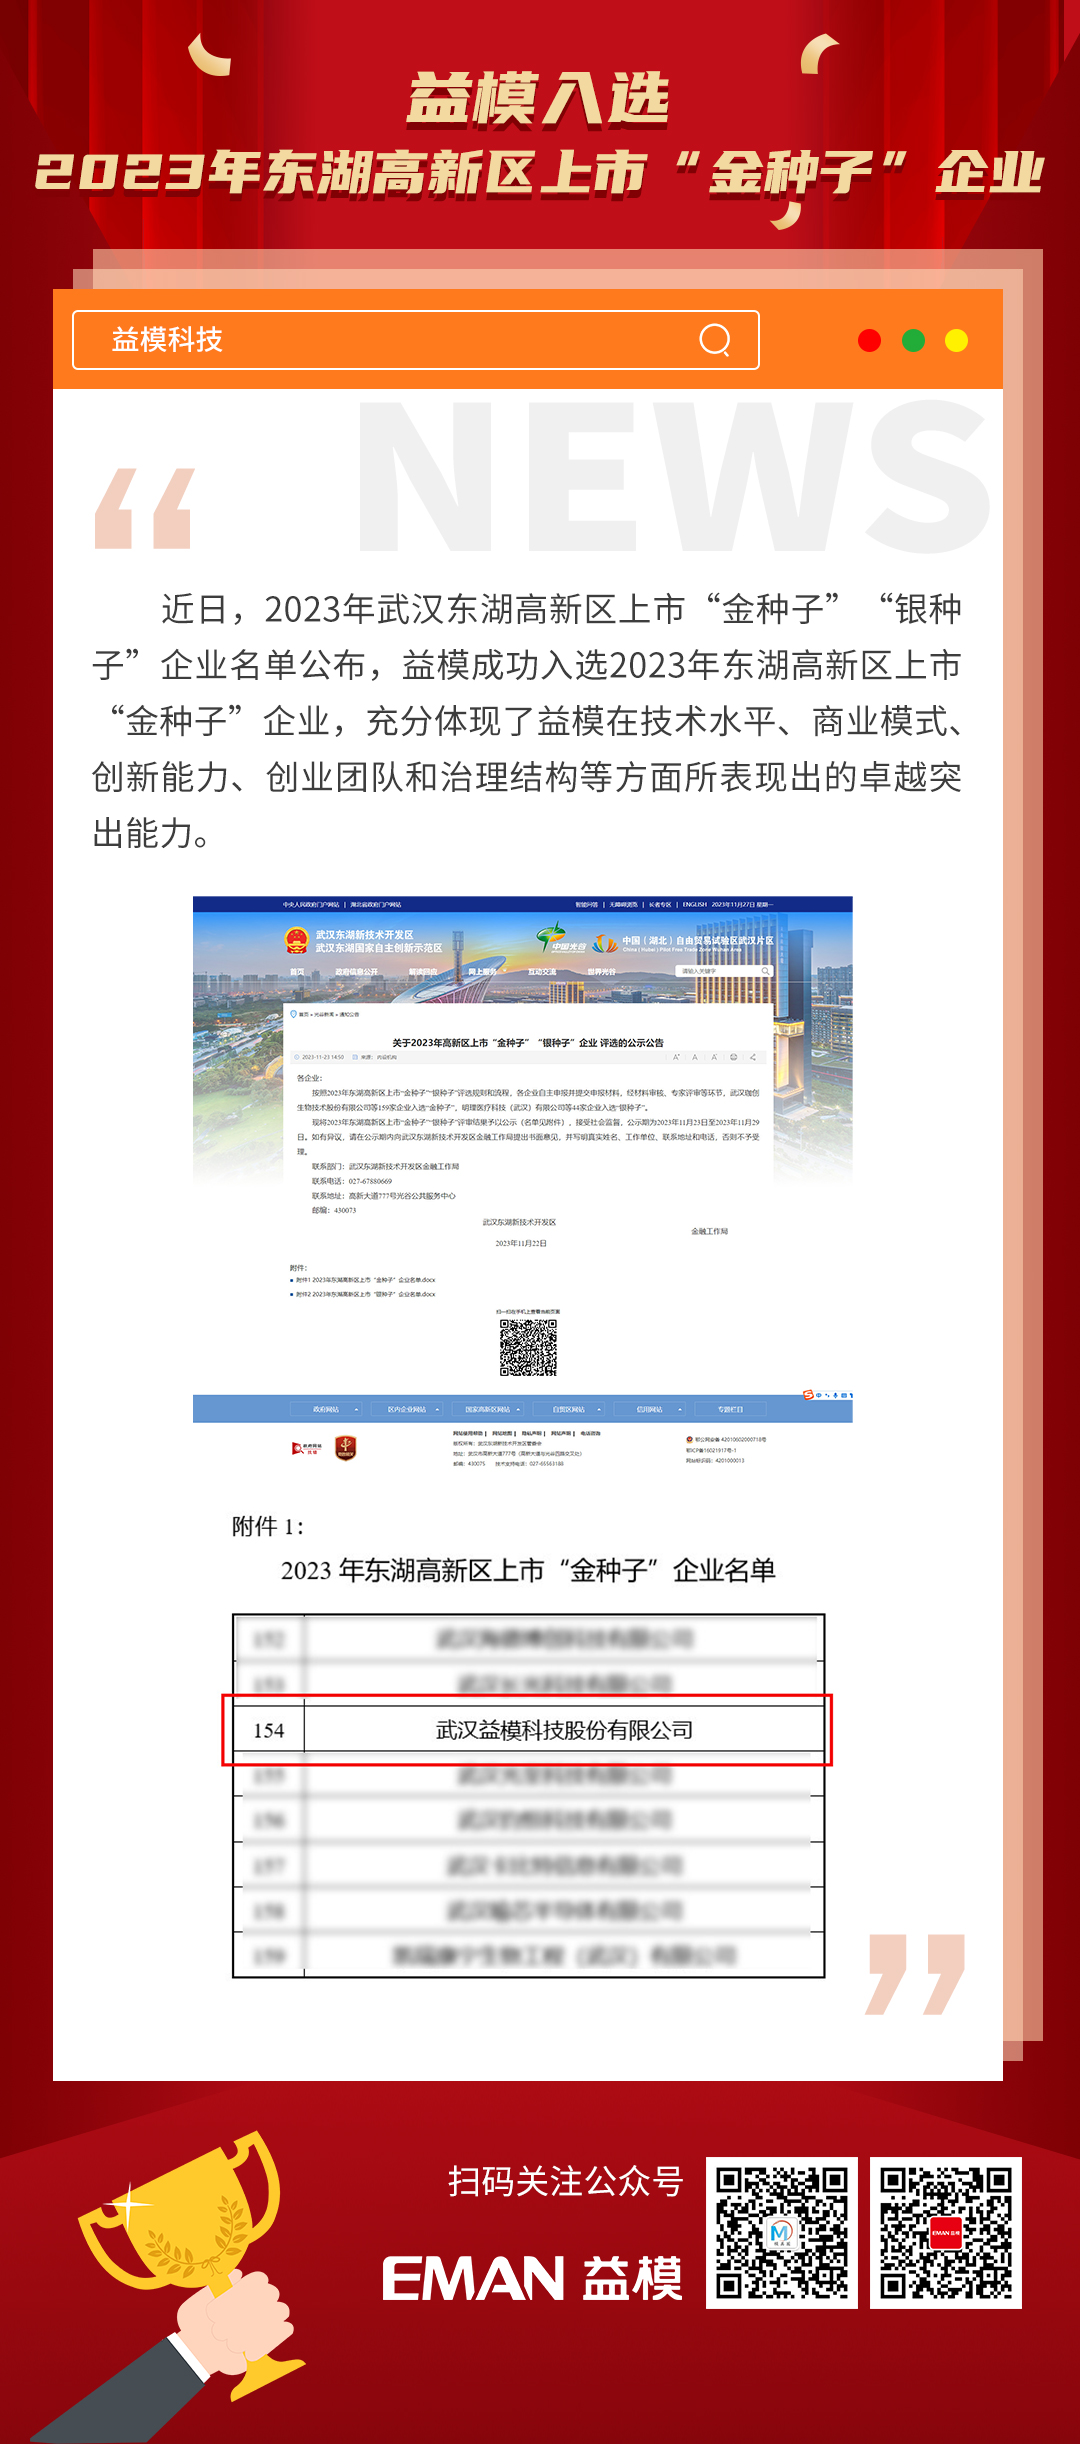 18-大阳城集团娱乐游戏入选2023年东湖高新区上市“金种子”企业.jpg